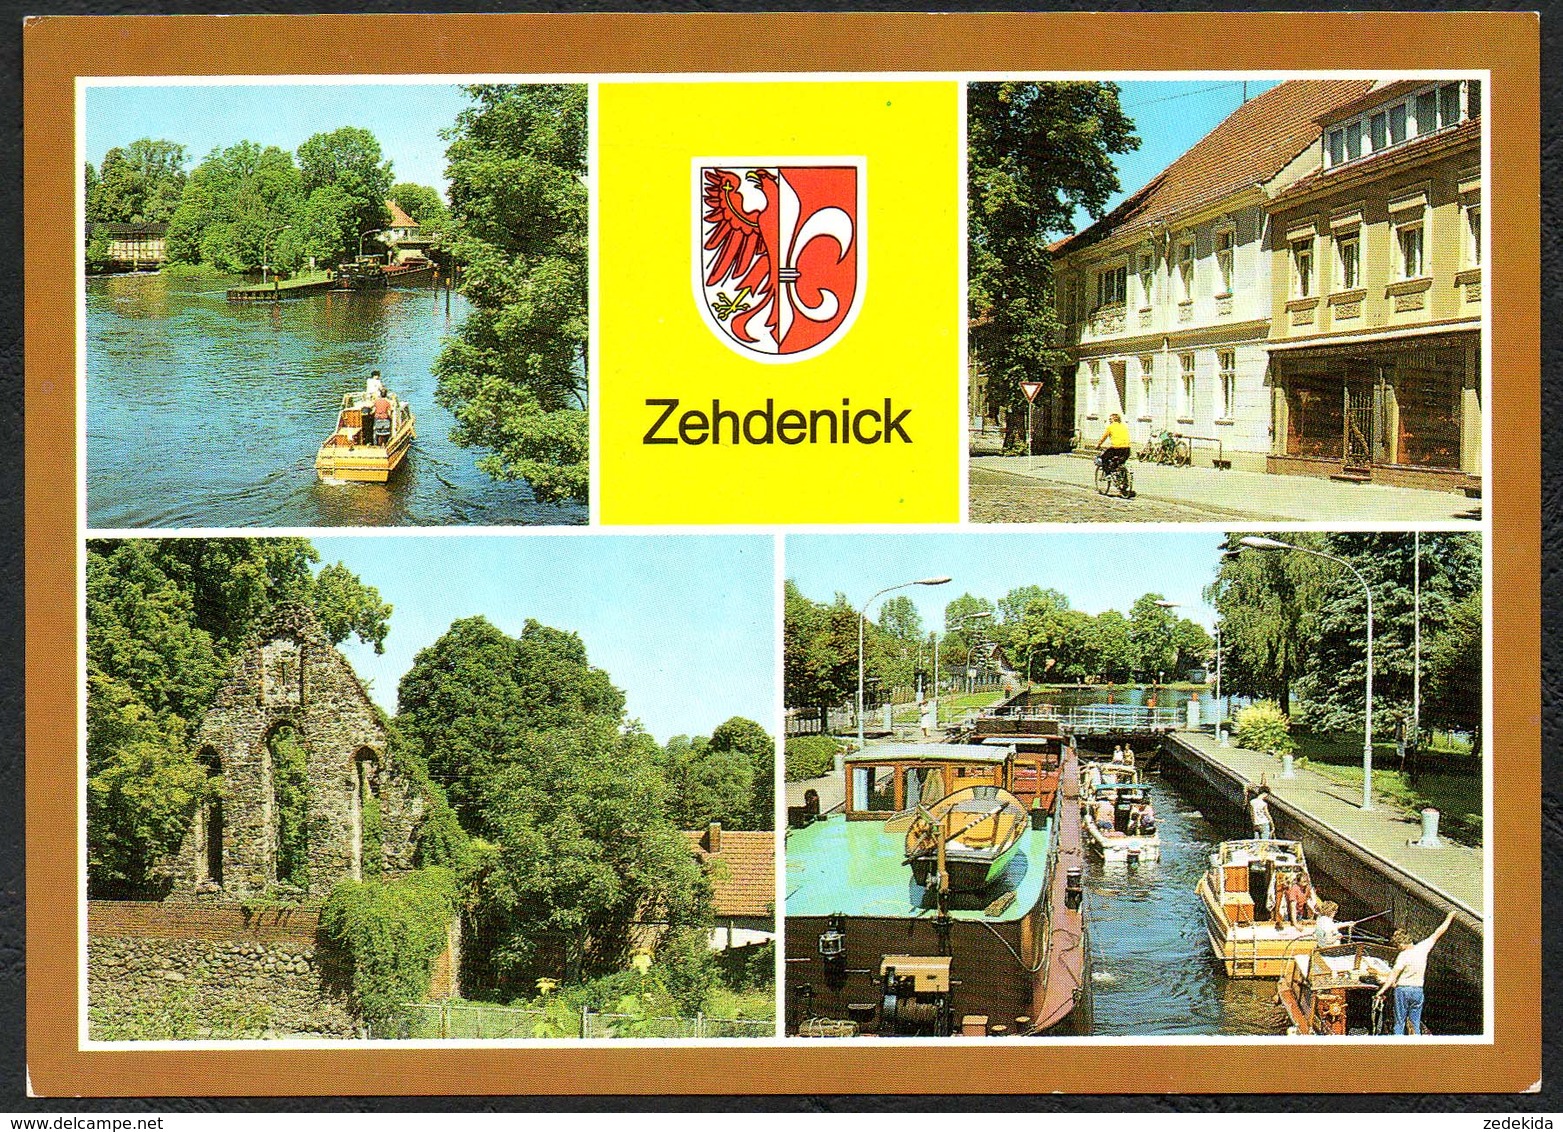 D2939 - TOP Zehdeneick Schleuse - Bild Und Heimat Reichenbach - Zehdenick